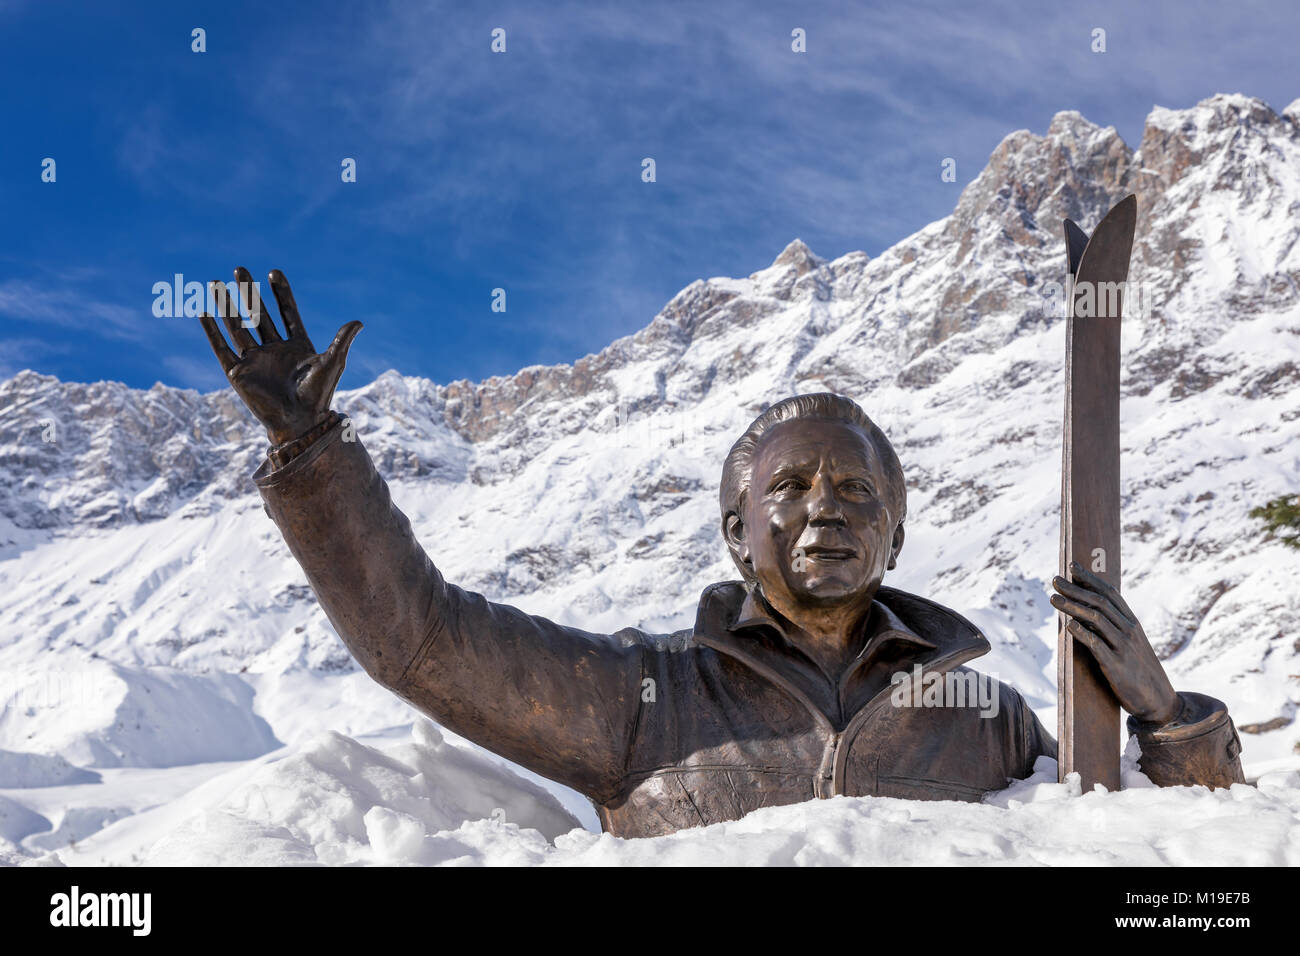 Statua di Mike Bongiorno ricoperta di neve, Breuil-Cervinia, Valle d'Aosta, Italia Foto Stock